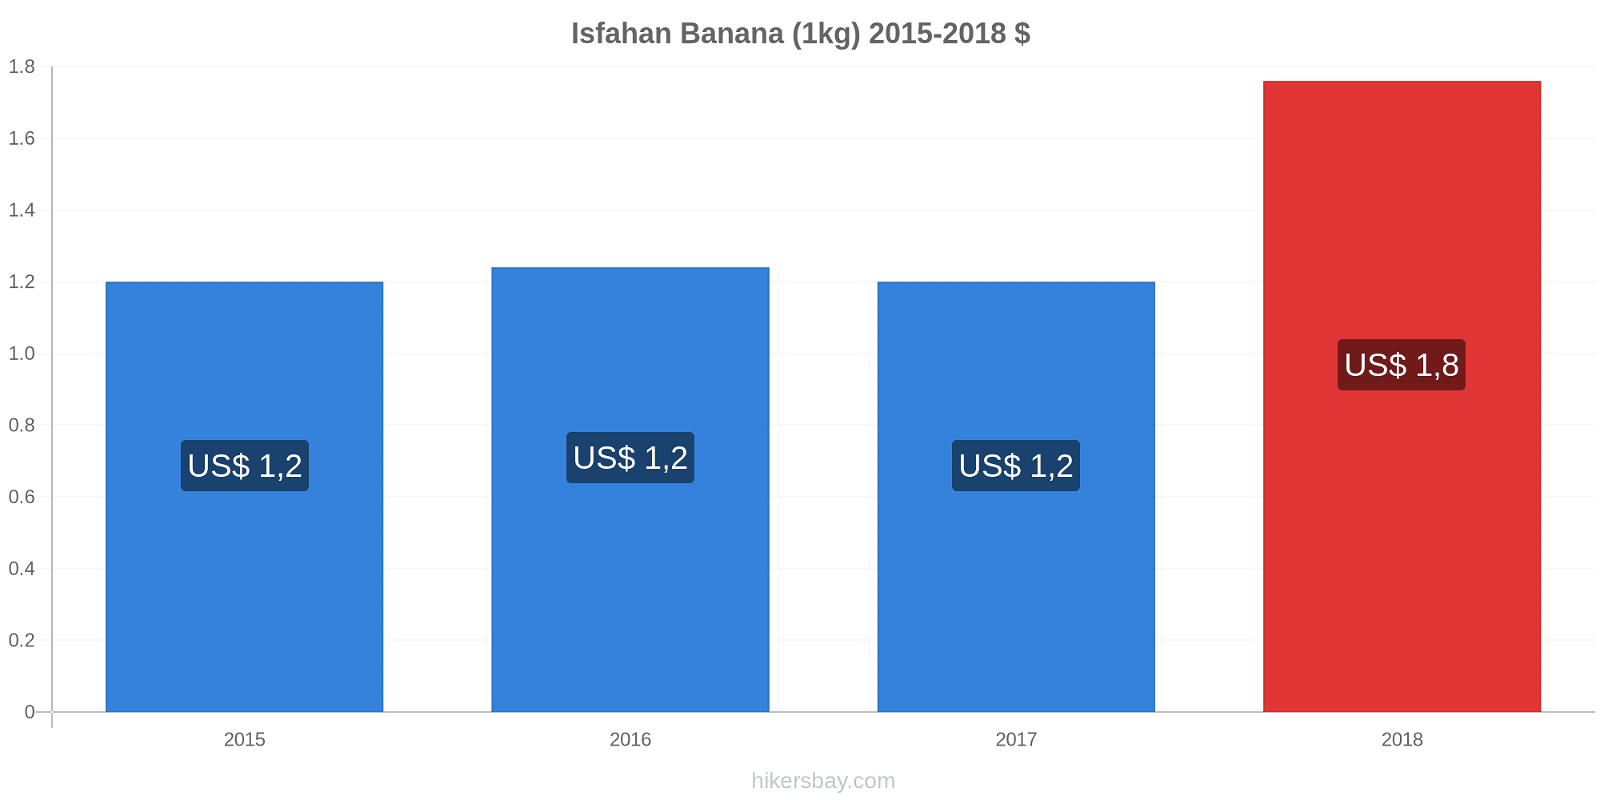 Isfahan variação de preço Banana (1kg) hikersbay.com